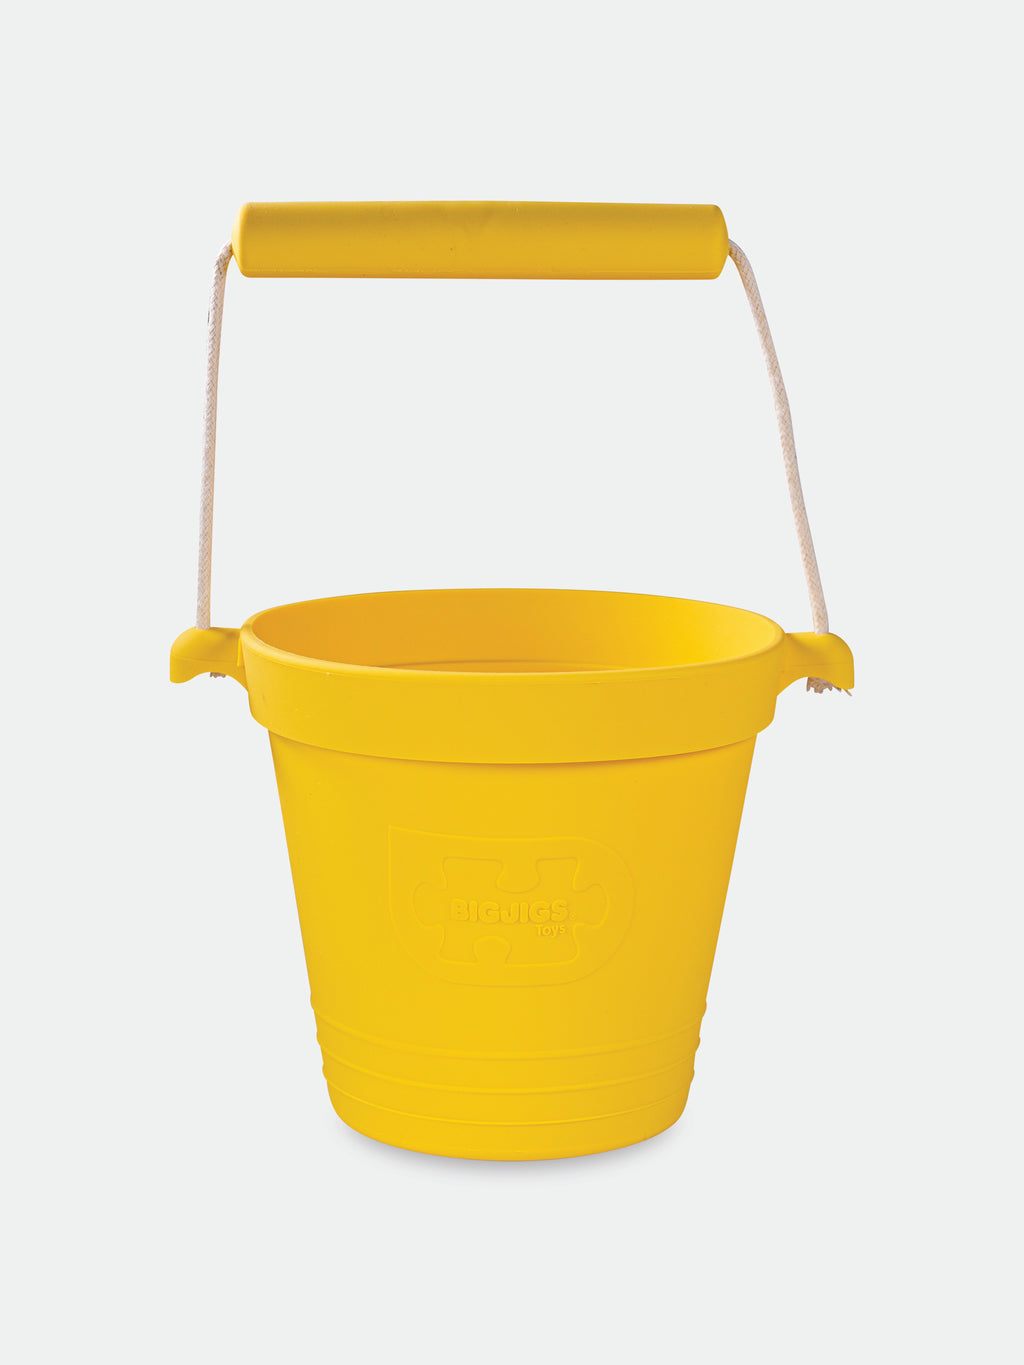 Yellow bucket for kids